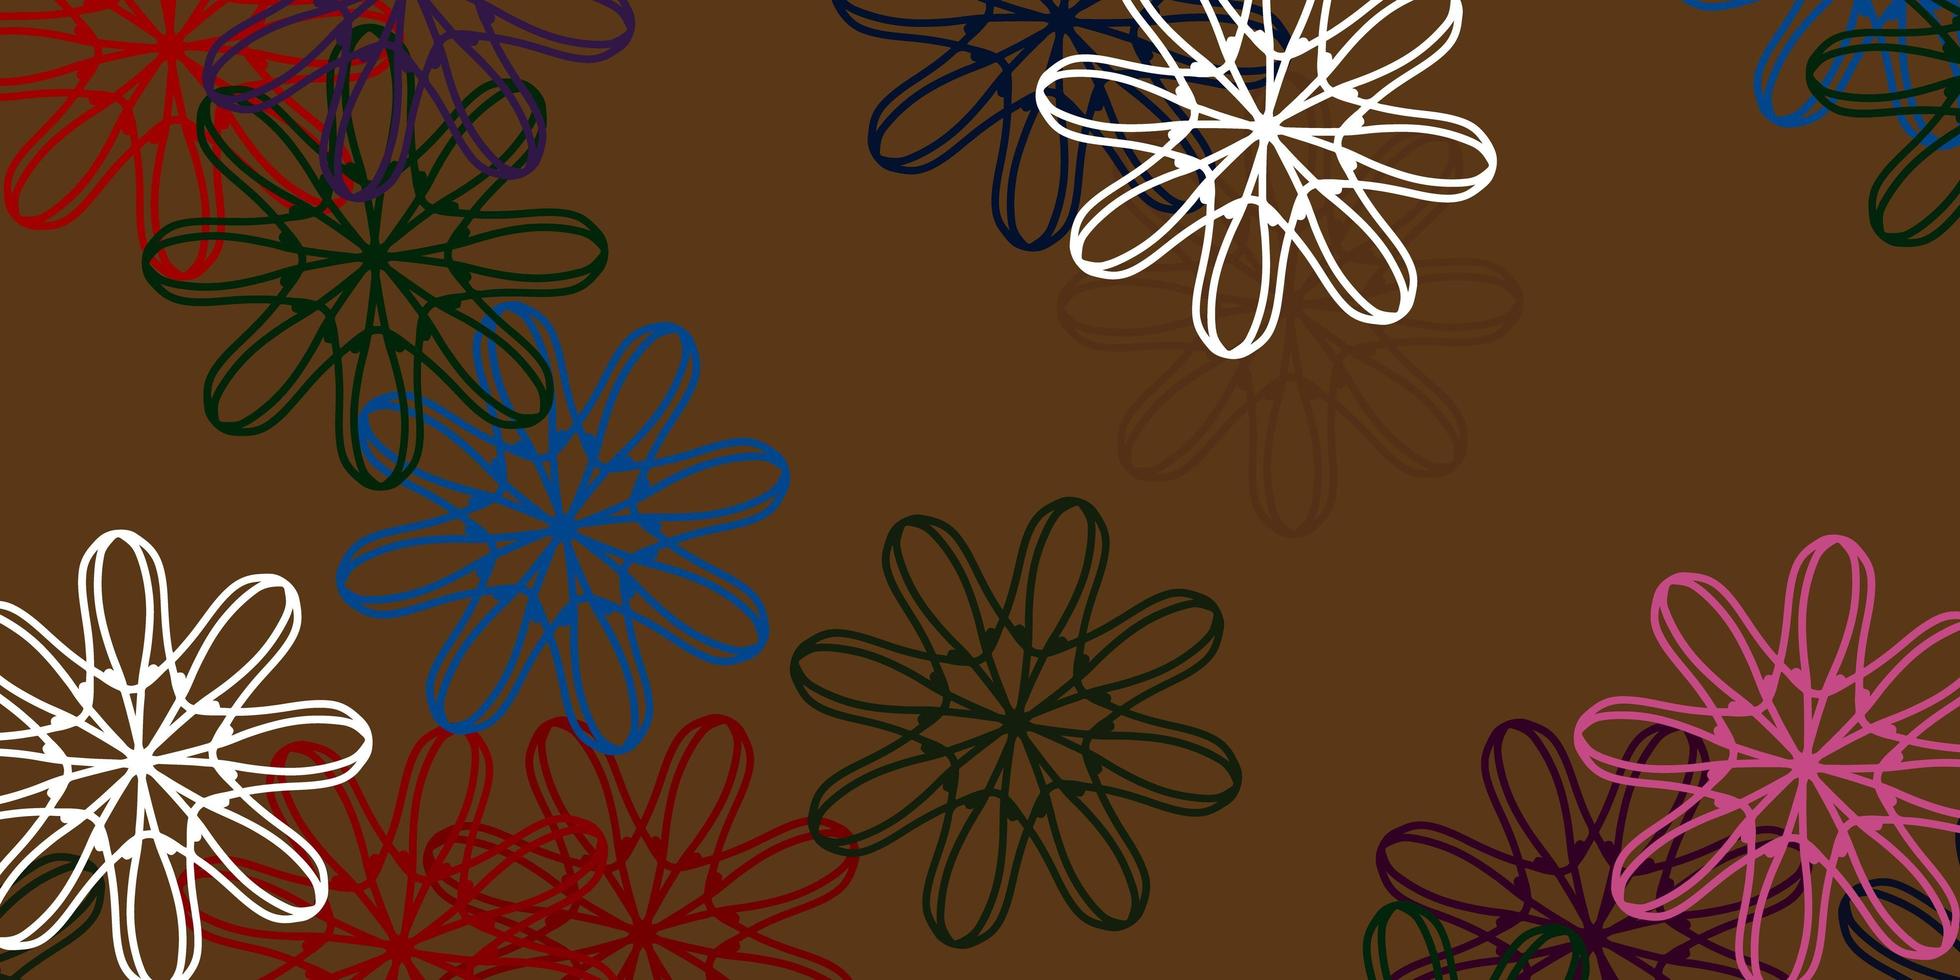 texture de doodle vecteur vert clair, rouge avec des fleurs.